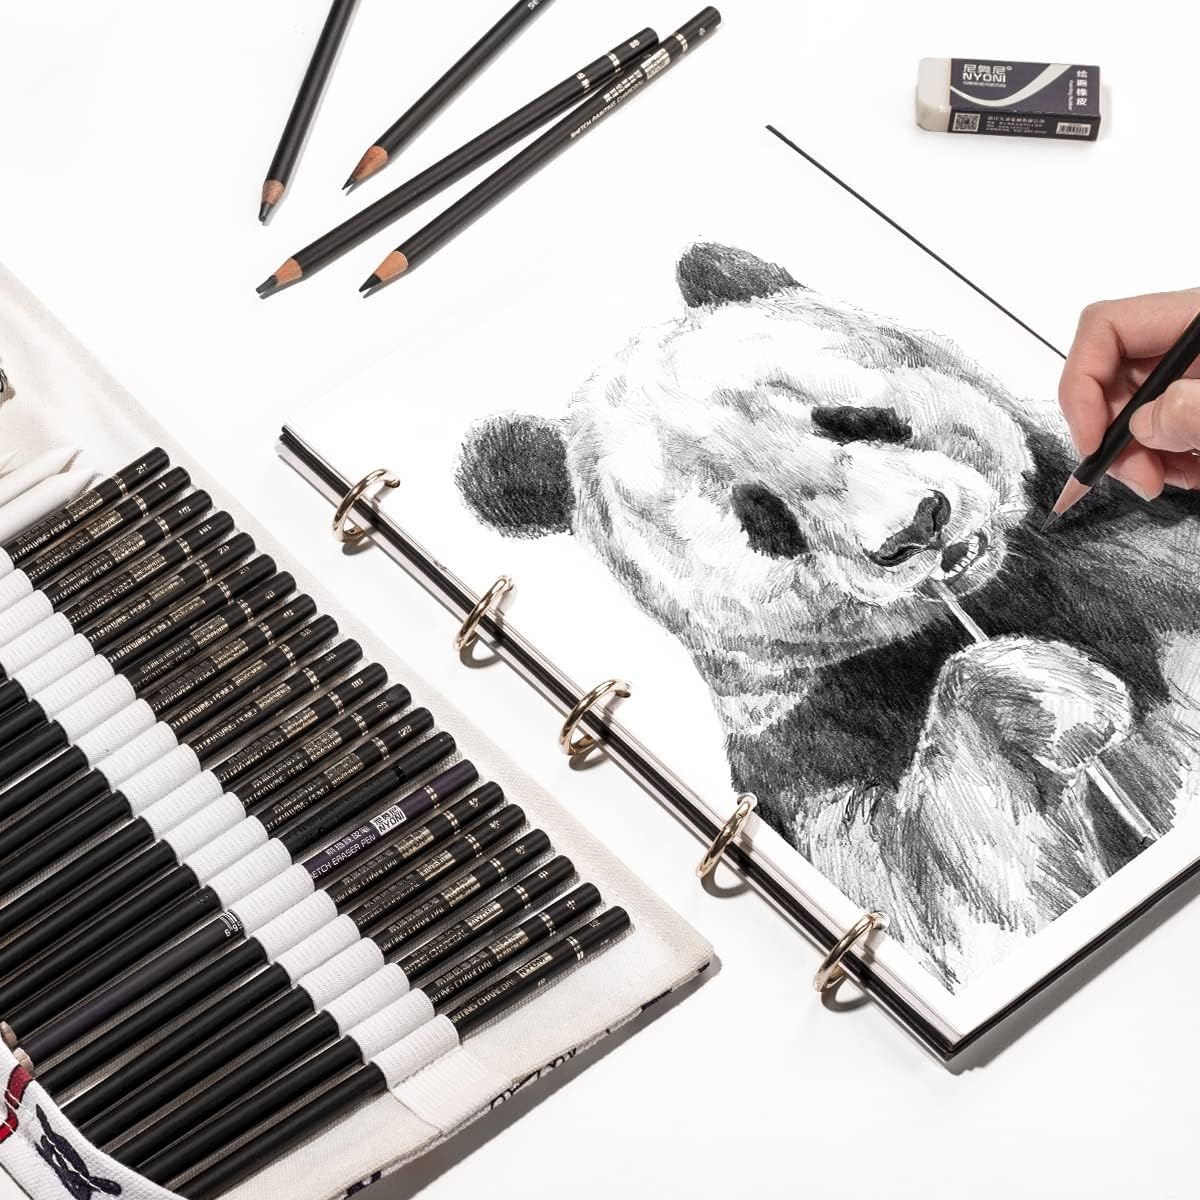 30pcs Professional Art Drawing Sketching Pencils - TTpen